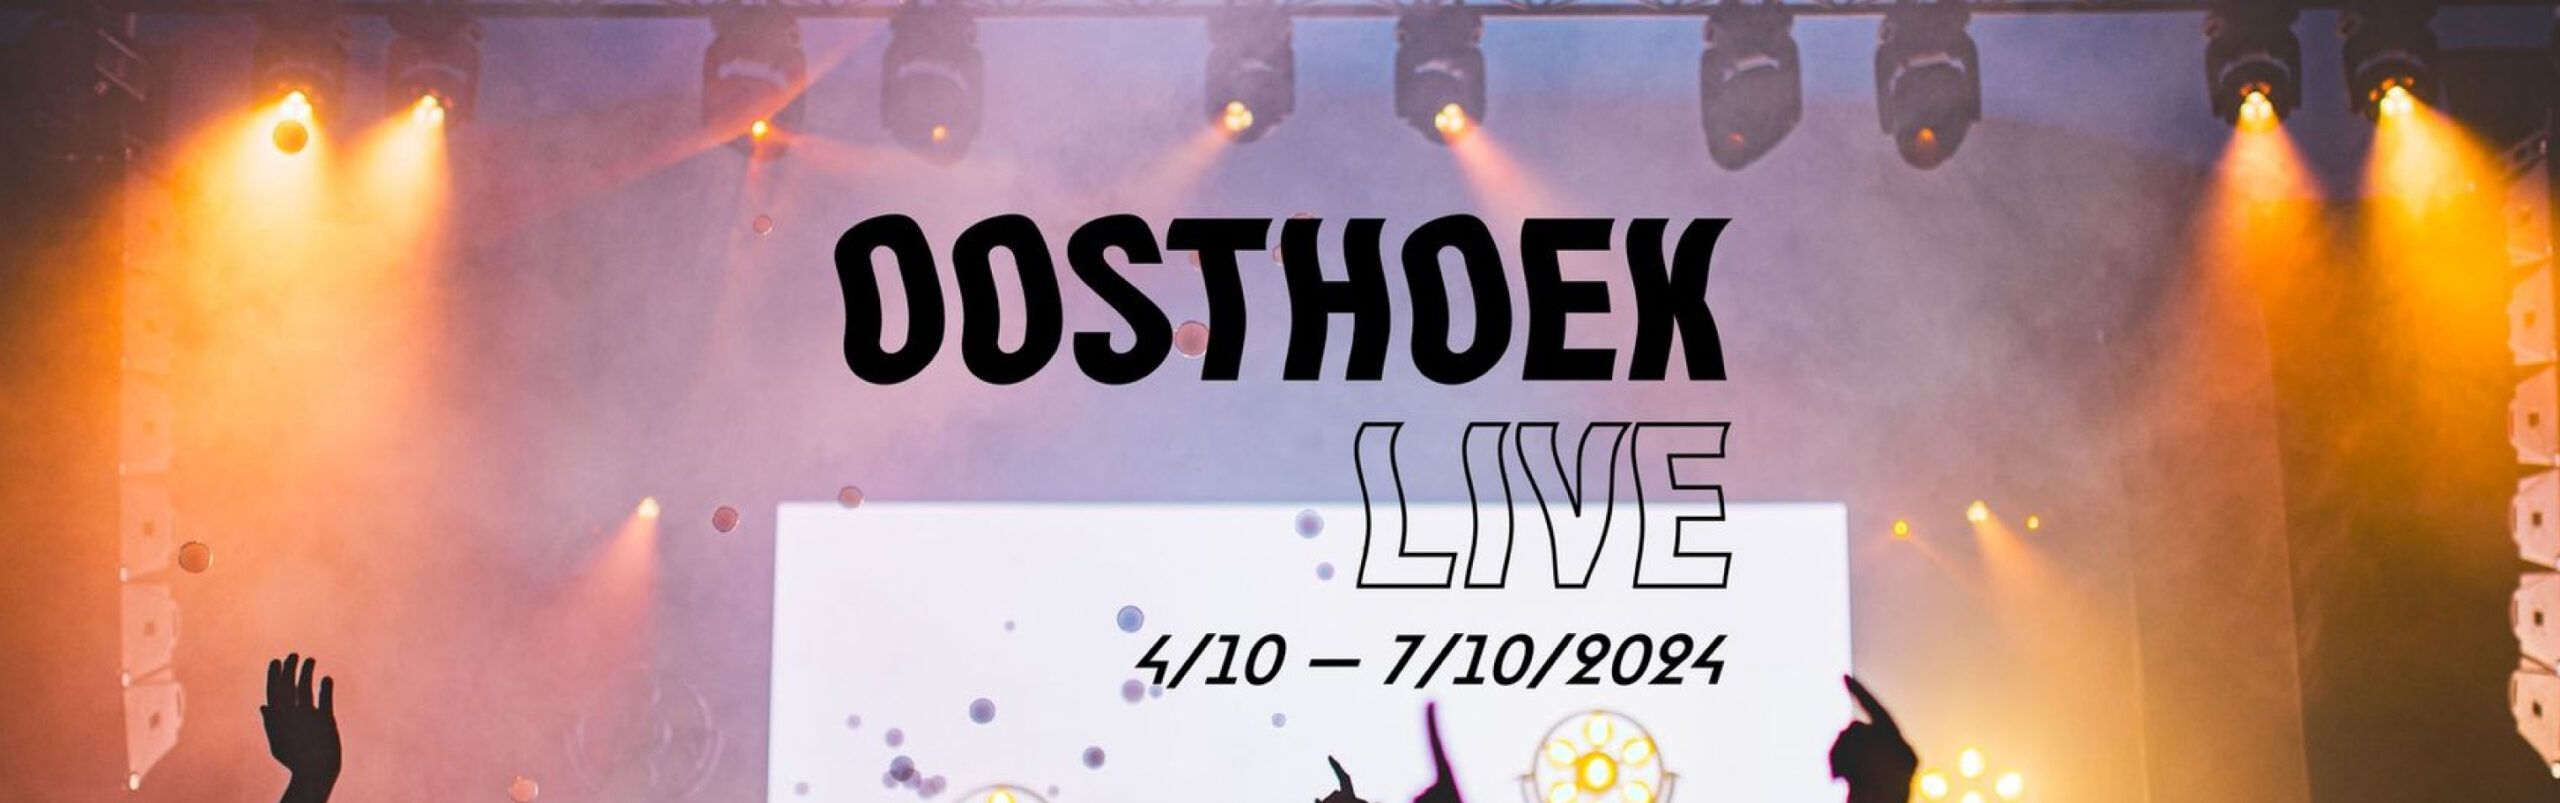 Oosthoek Live header